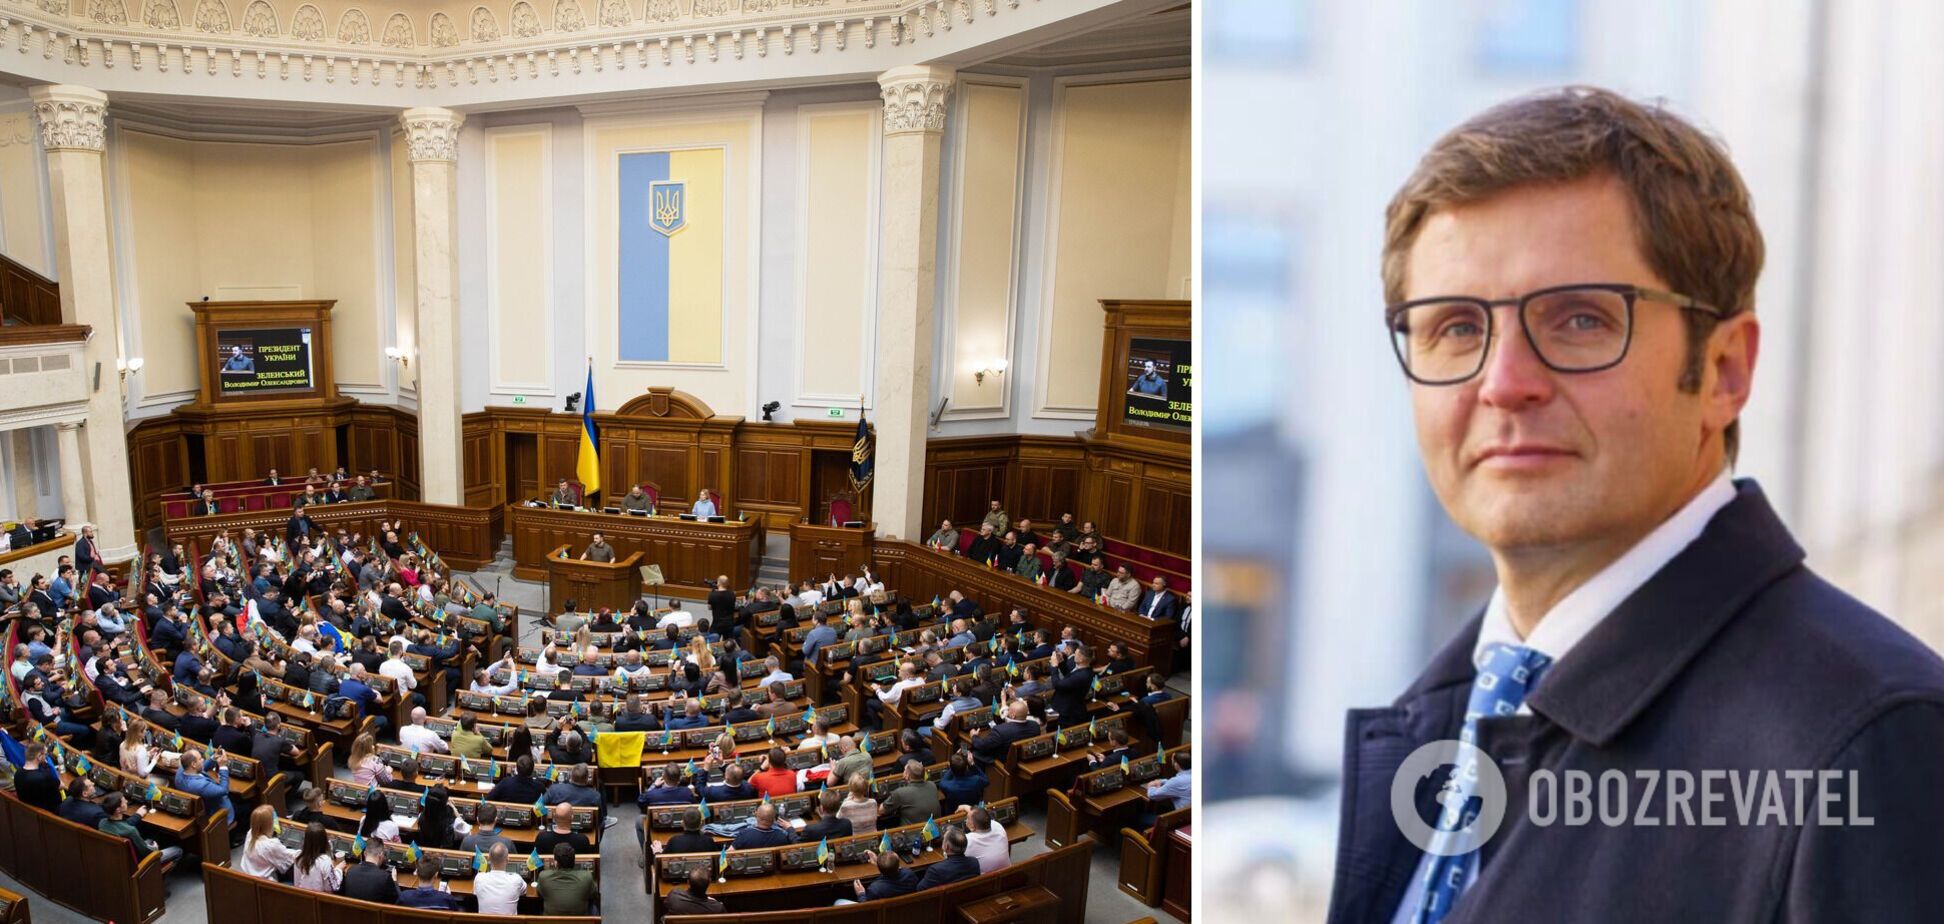 'Слуга' Холодов подал заявление на сложение депутатских полномочий. Документ